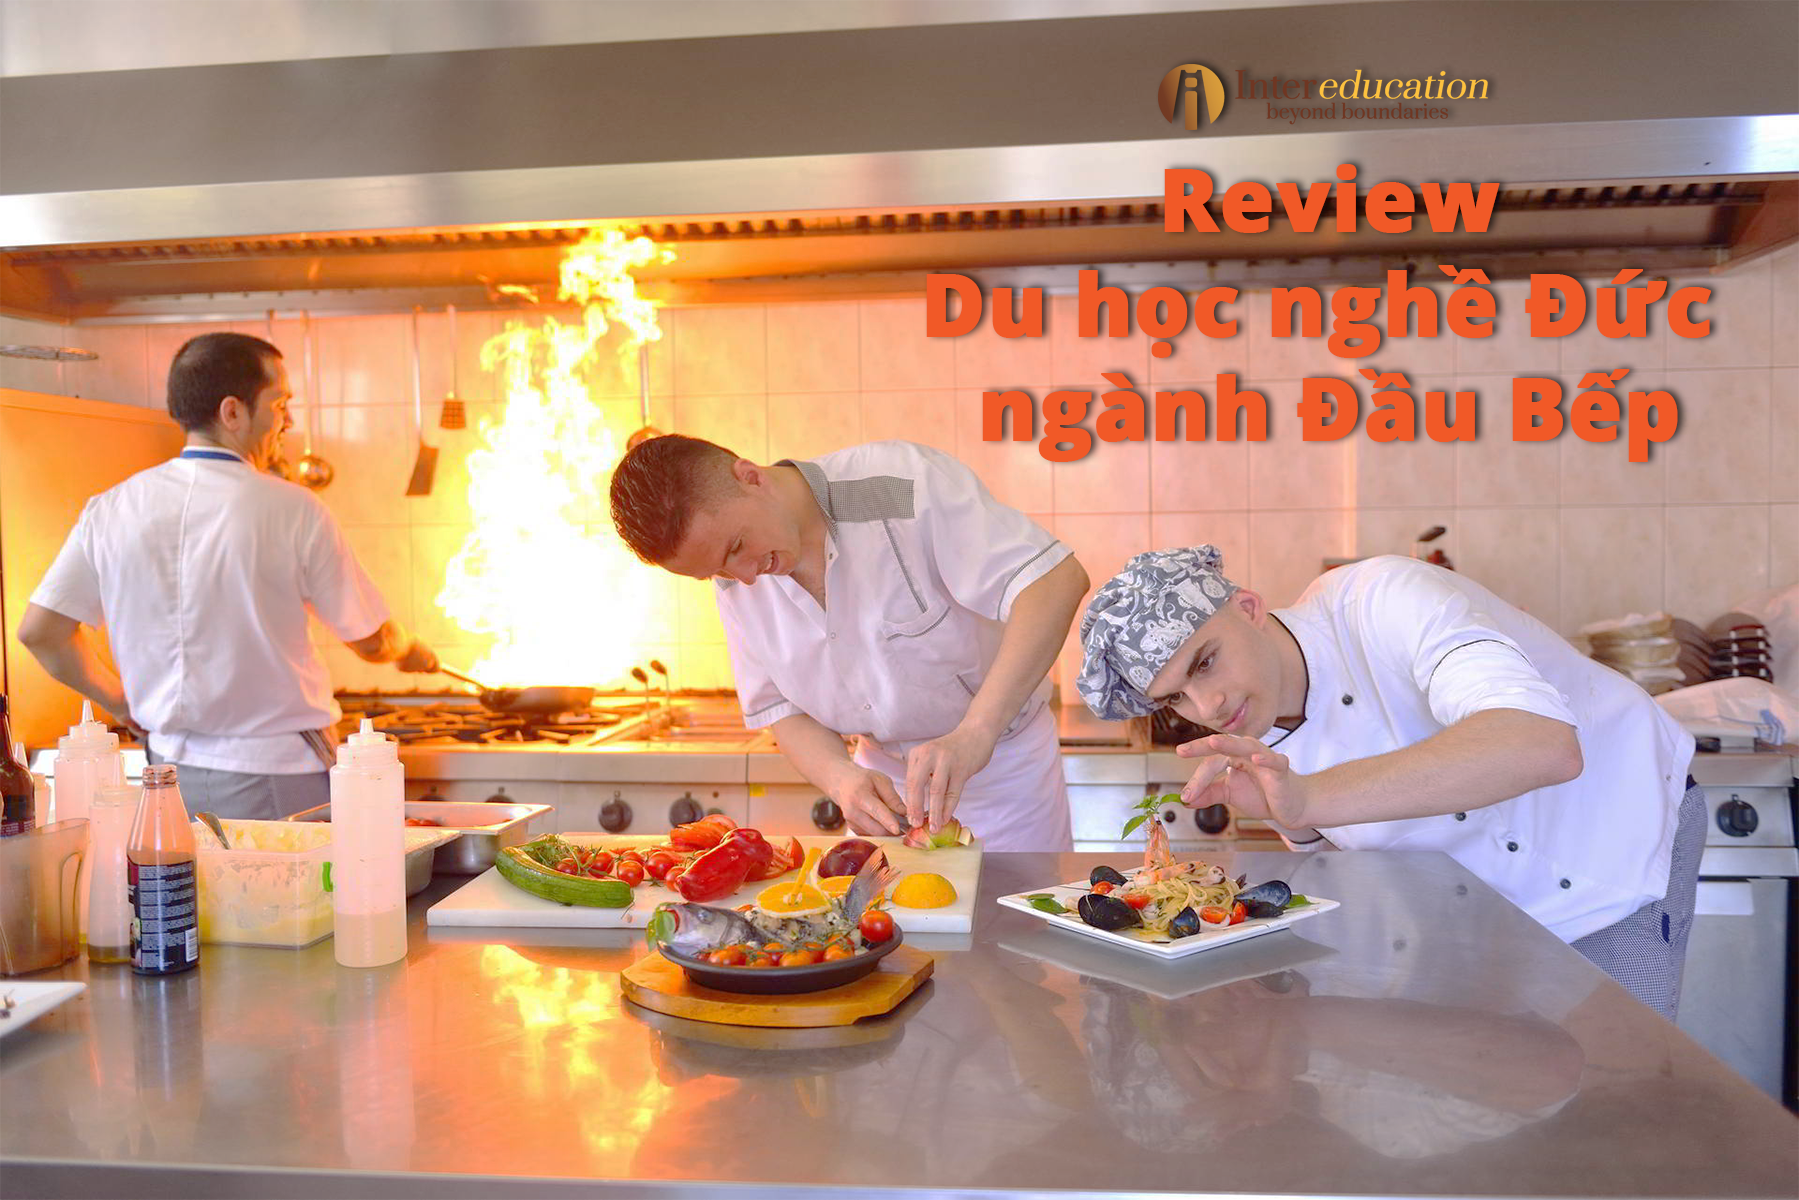 Review Du học nghề đầu bếp tại Đức